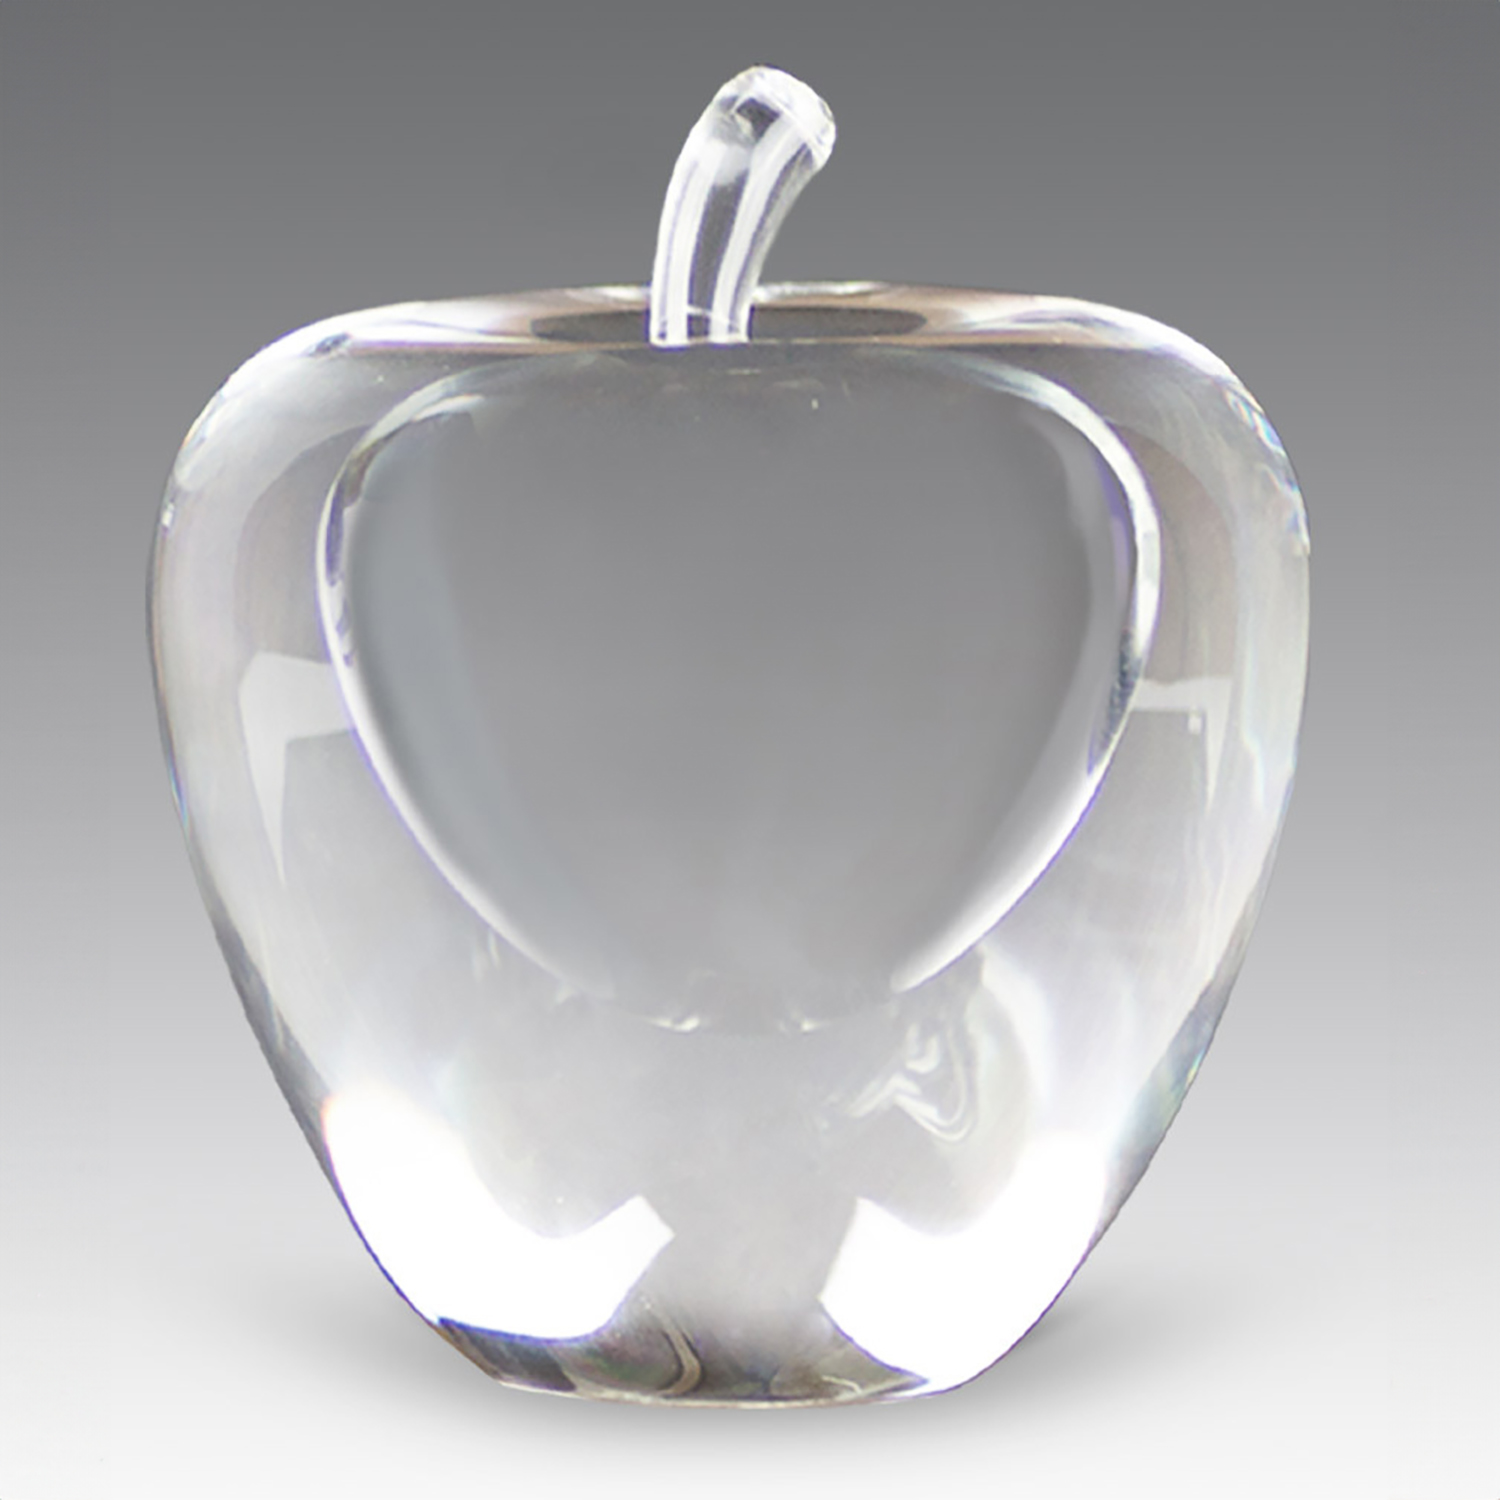 Glass Apple Award